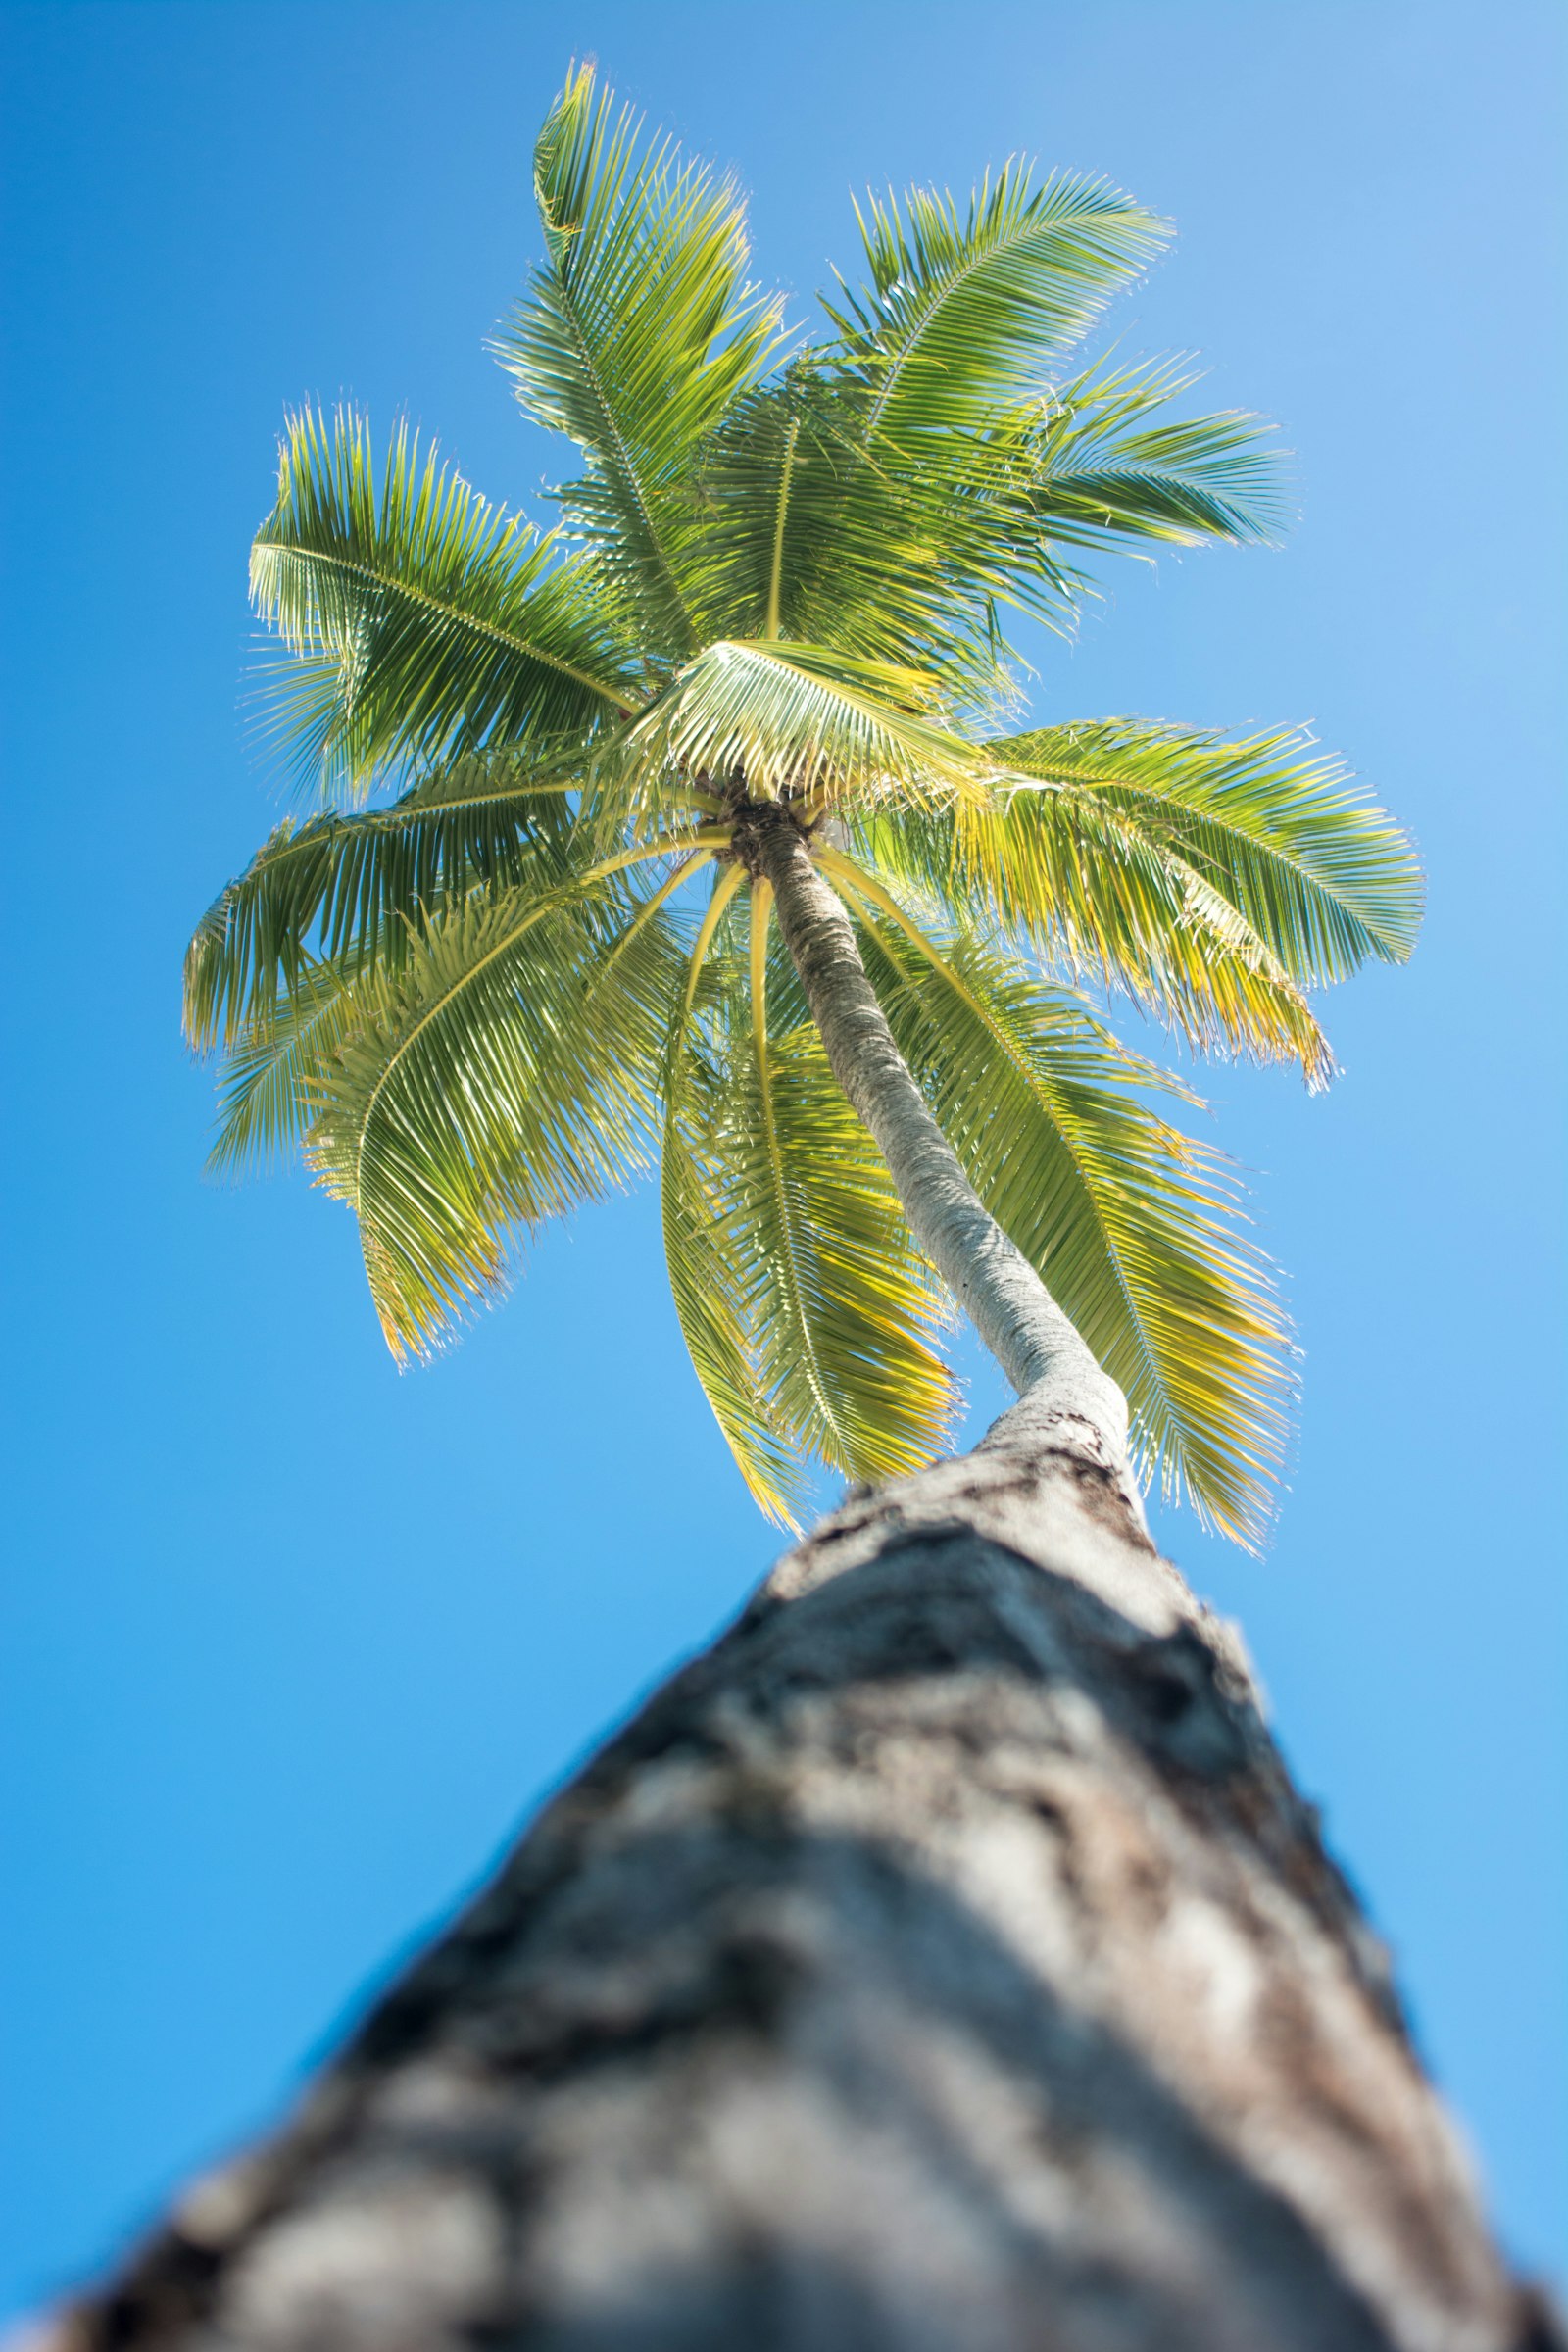 Nikon AF Nikkor 24mm F2.8D sample photo. Green coconut palm tree photography